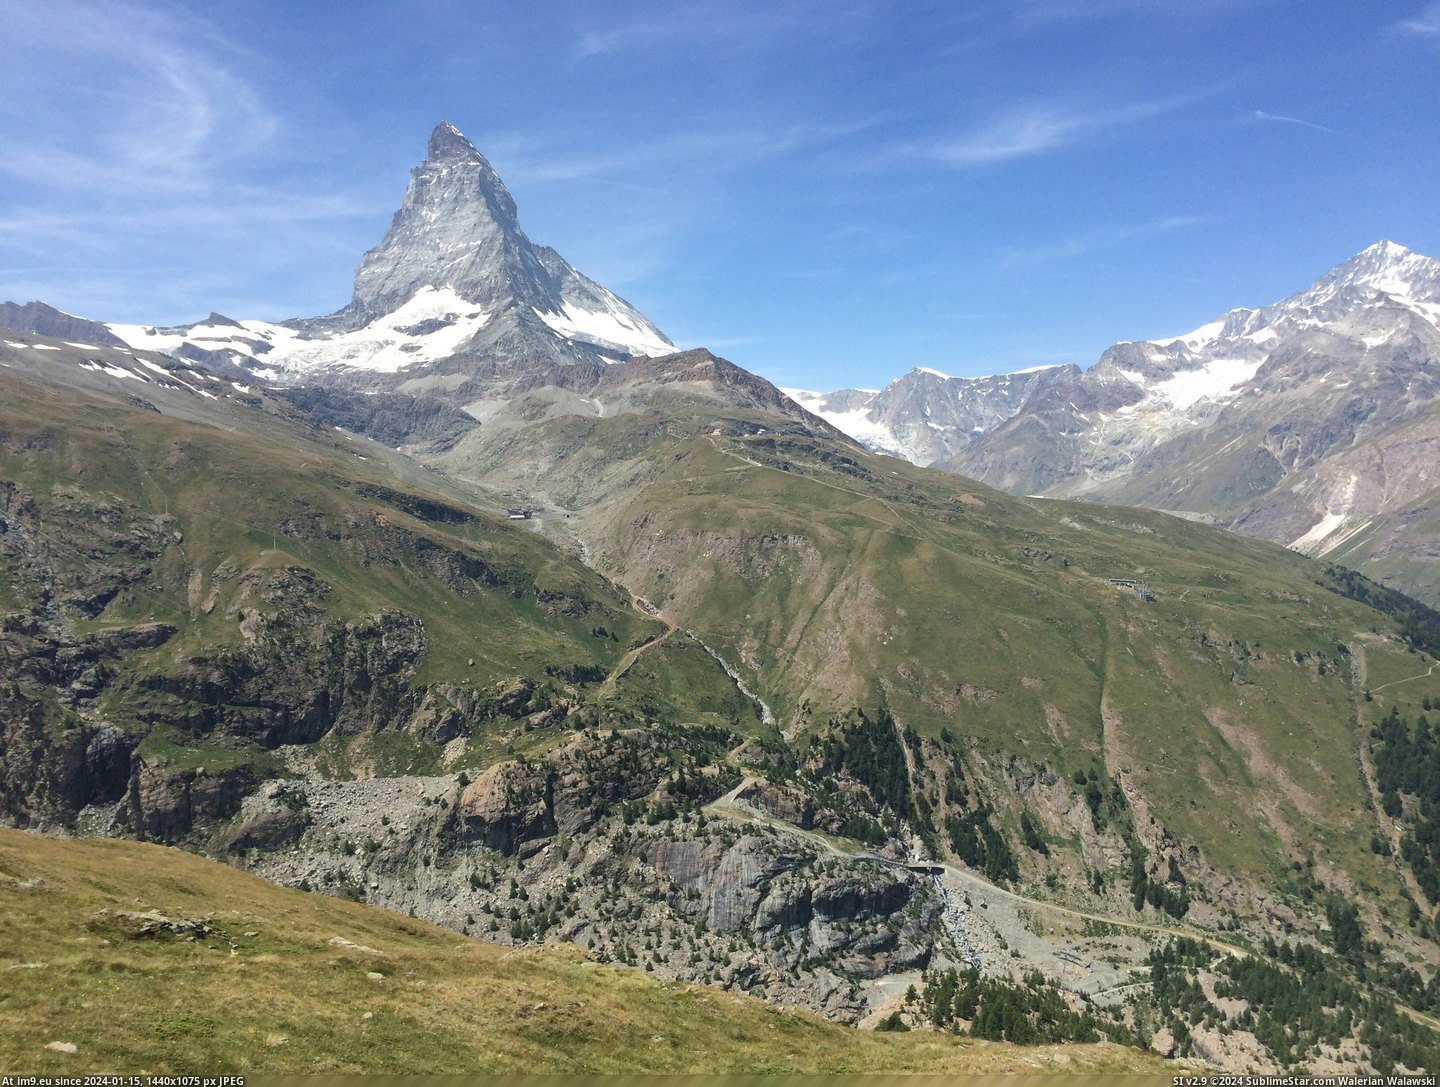 #Summer #Phone #Matterhorn #Zermatt #3264x2448 #Switzerland [Earthporn] View of Matterhorn from Riffelberg, Zermatt, Switzerland. Taken with my phone last summer.  [3264x2448] Pic. (Image of album My r/EARTHPORN favs))